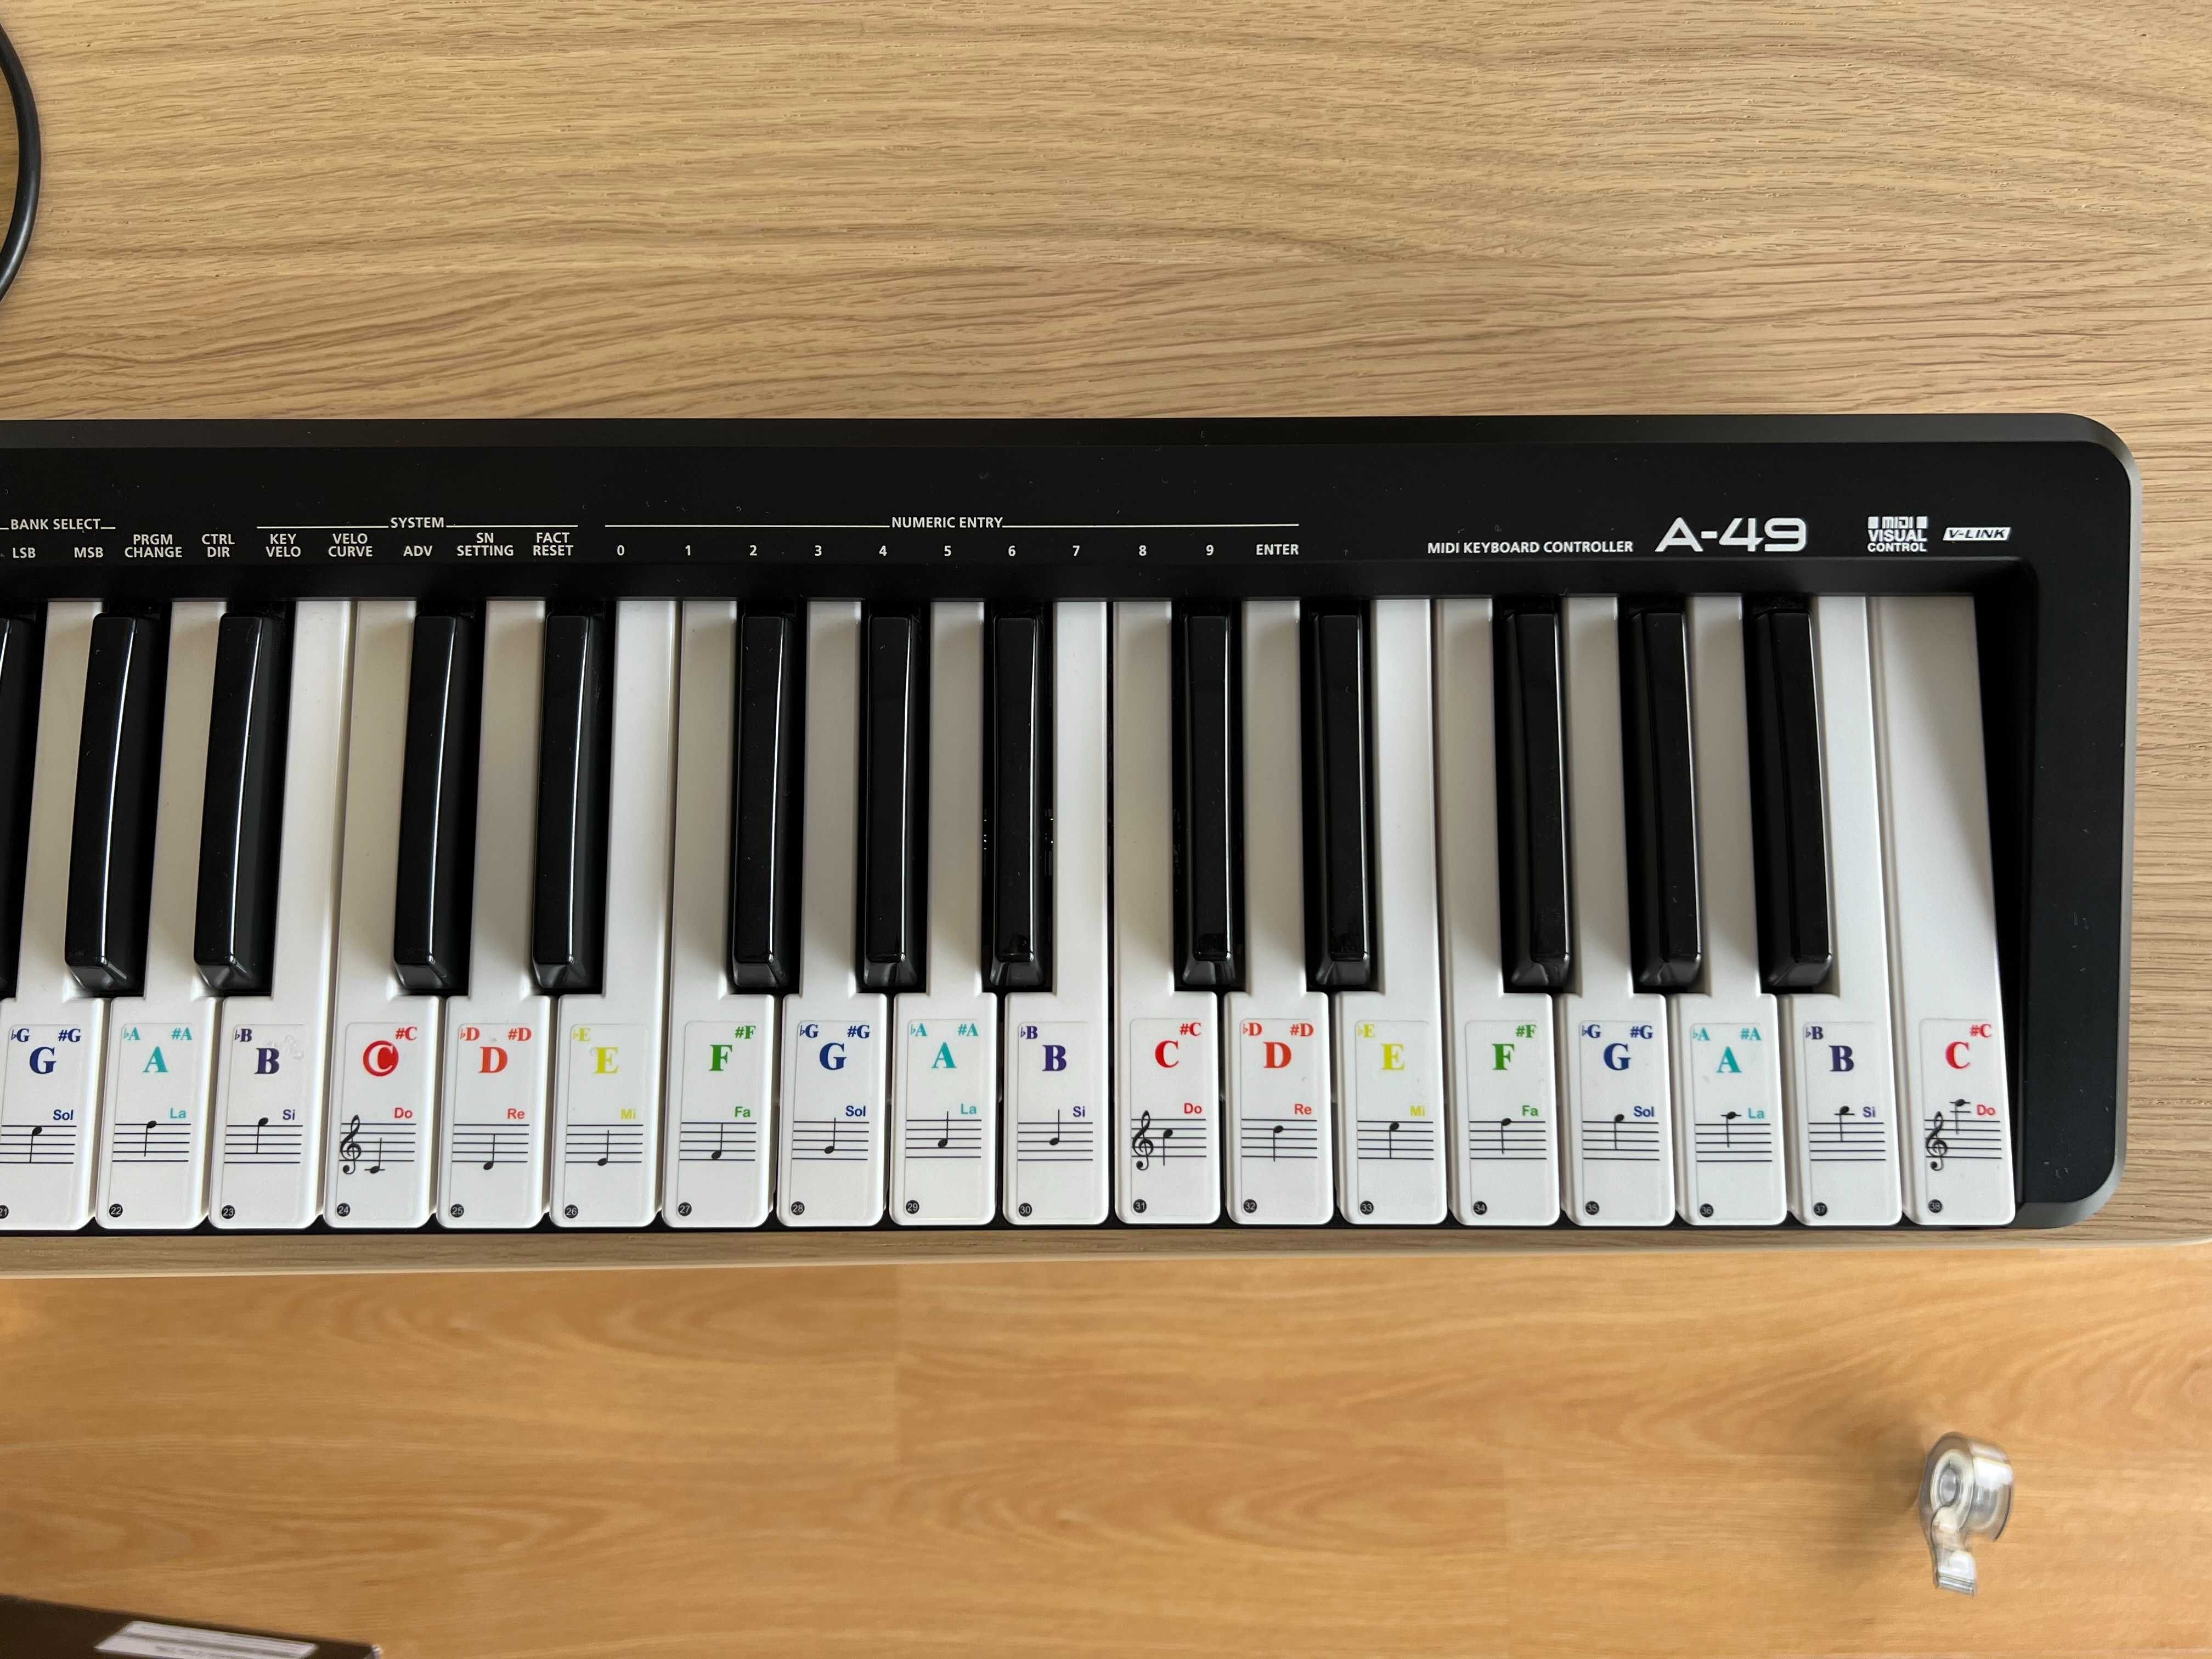 Roland A-49 midi keyboard